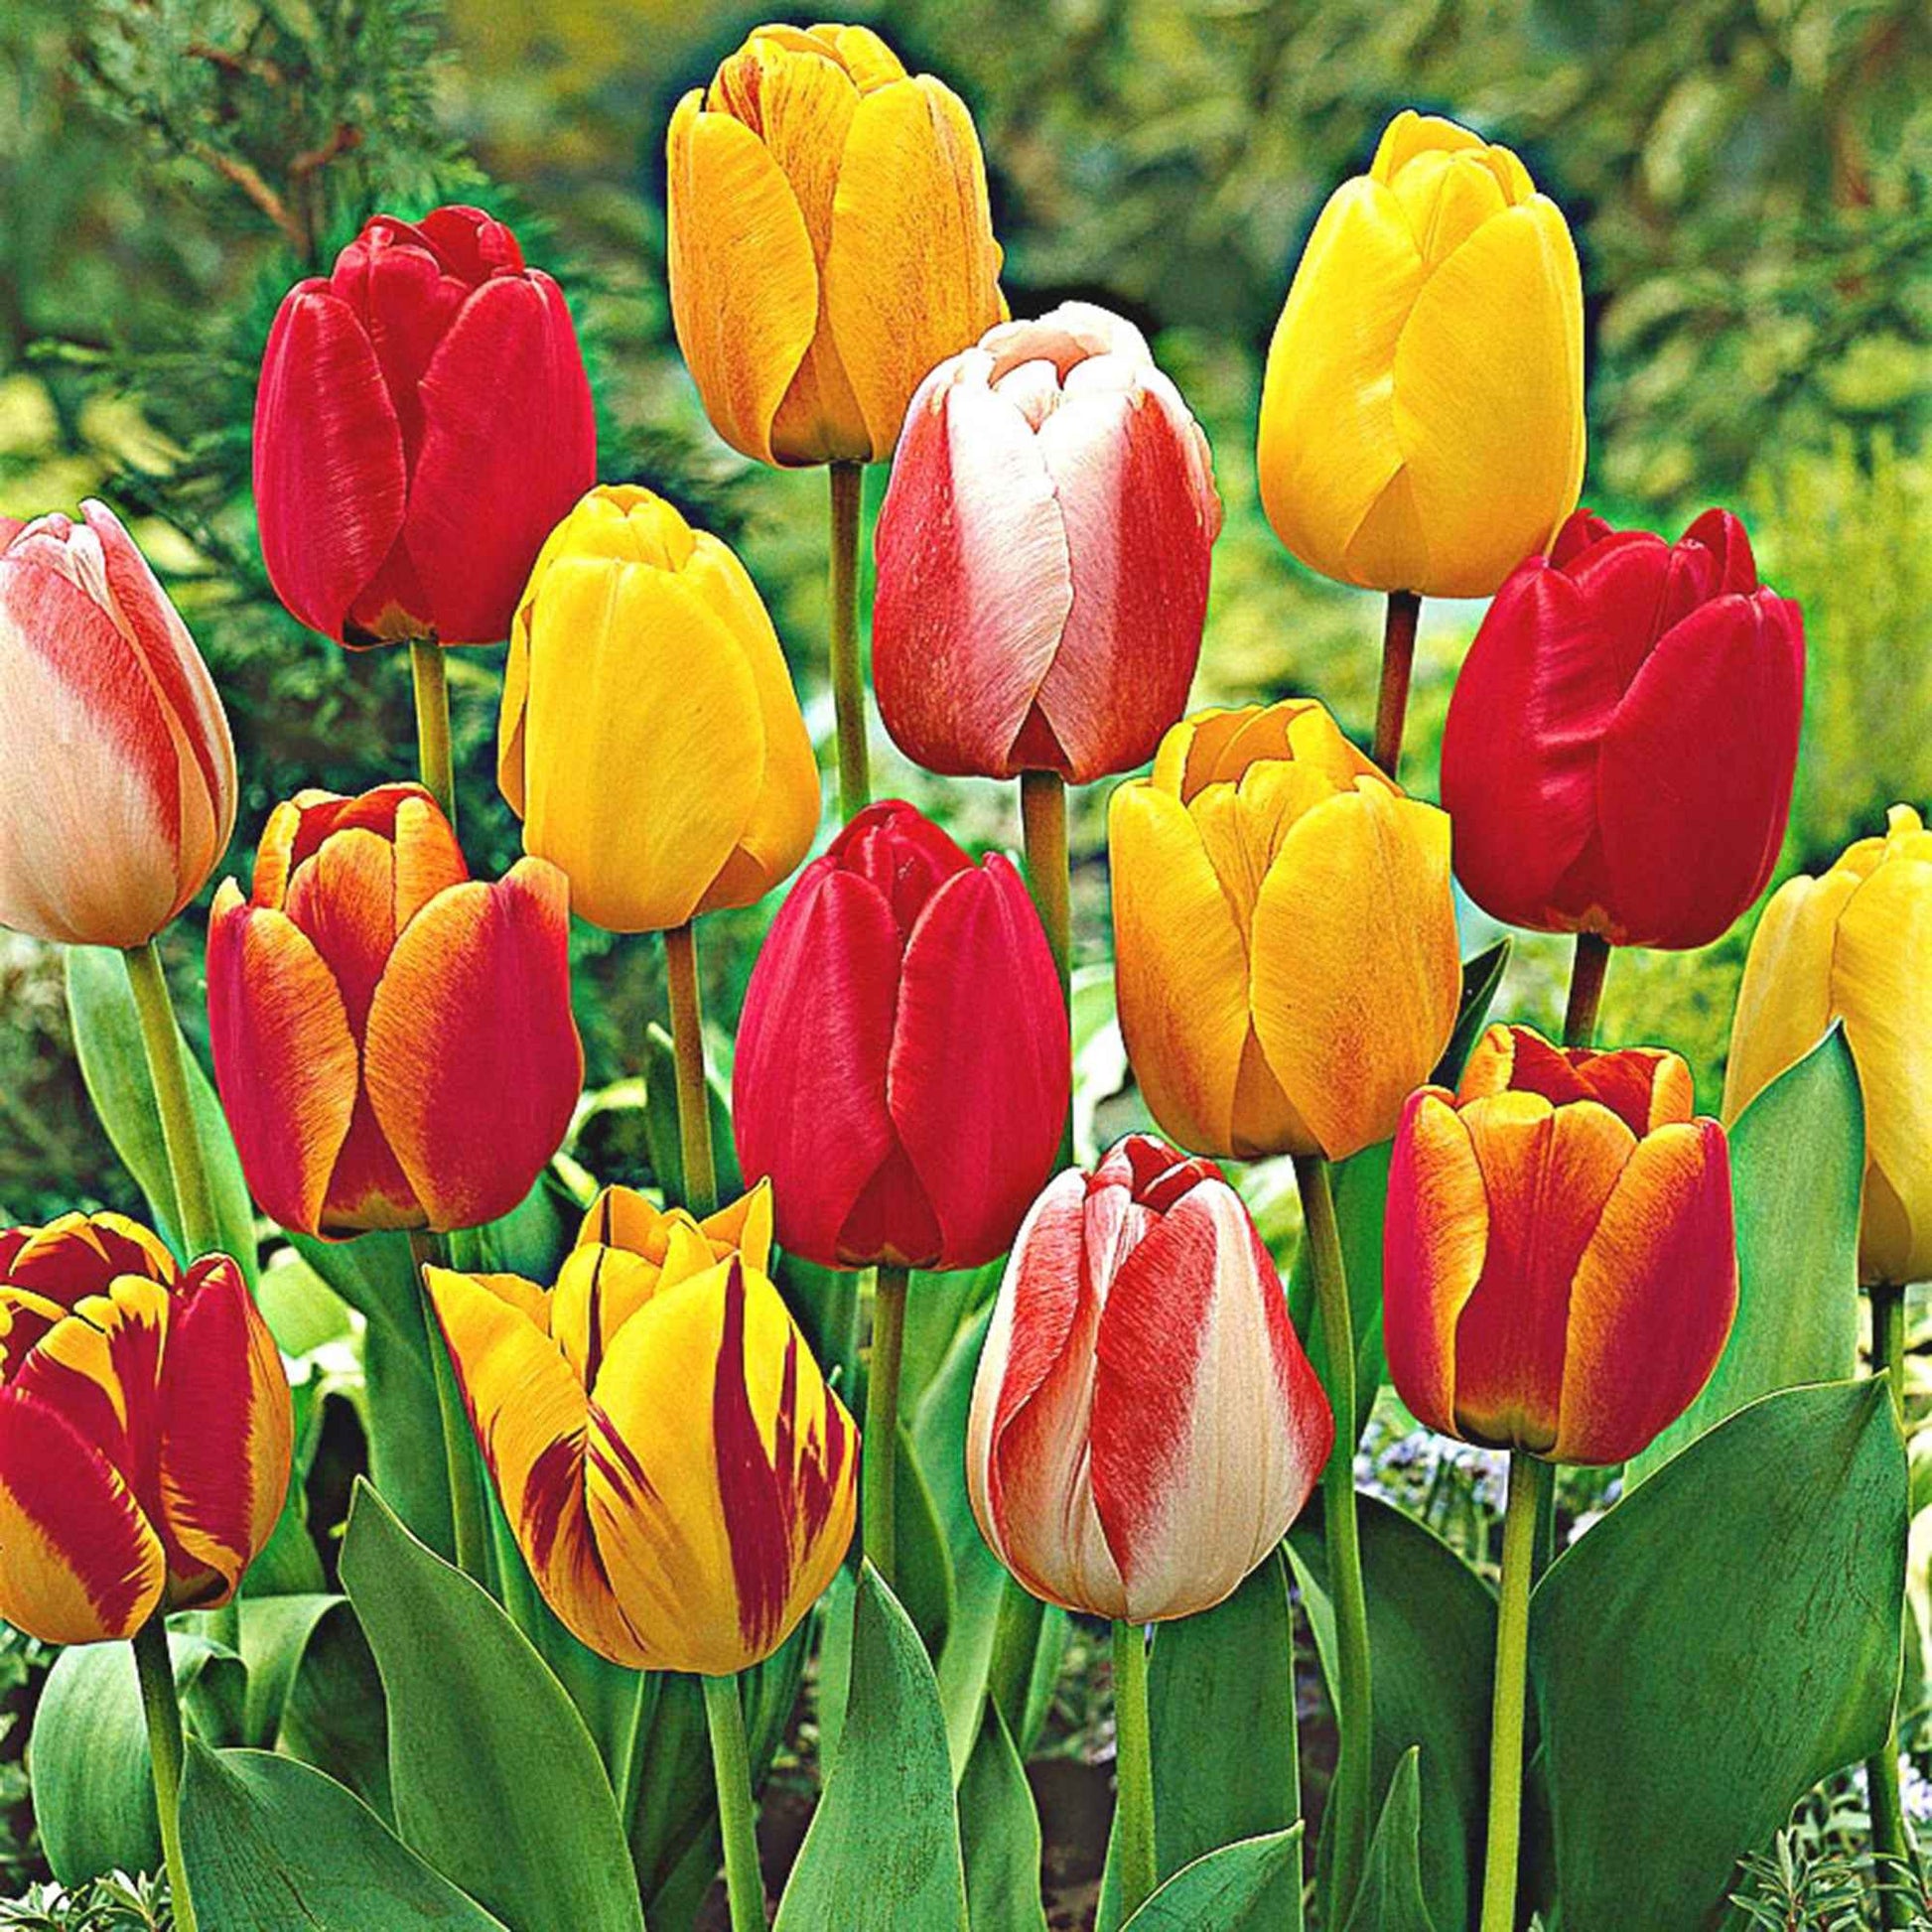 8x Tulipes et narcisses - Mélange 'Adagio' - Bulbes de fleurs biologiques